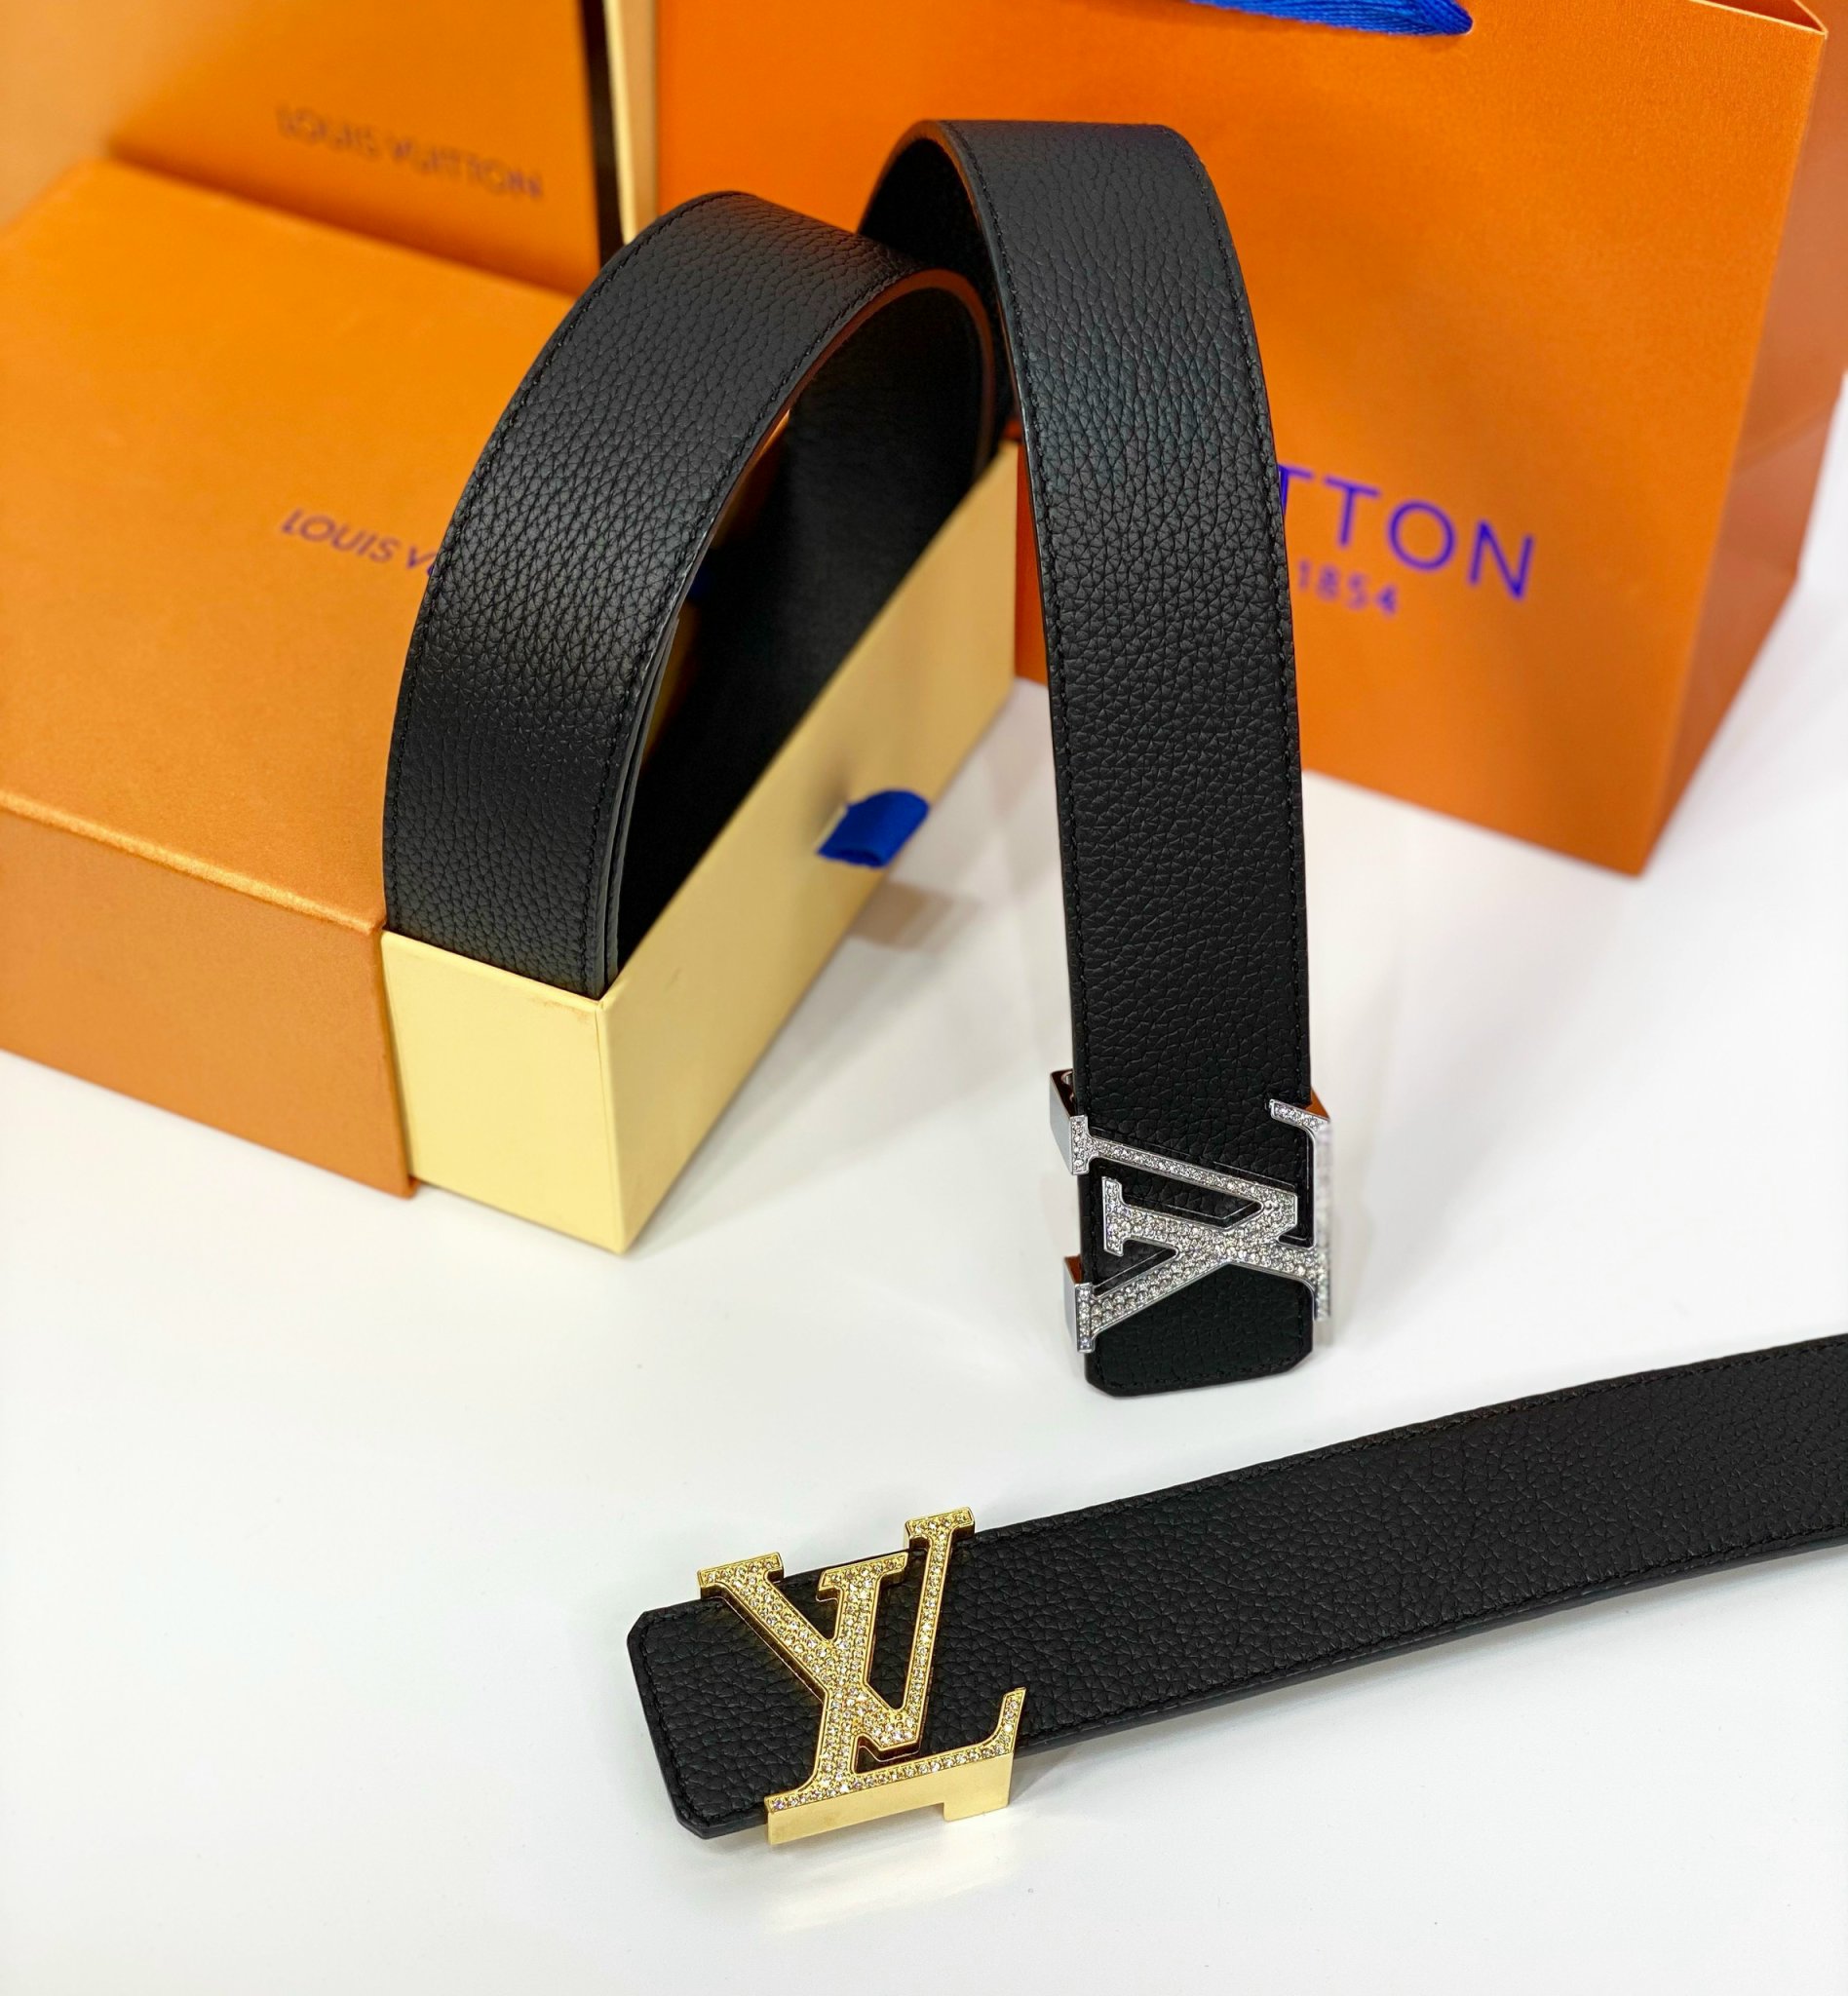 Thắt lưng Louis Vuitton nam fake chính hãng mặt vàng sáng bóng dây đen sần  LV